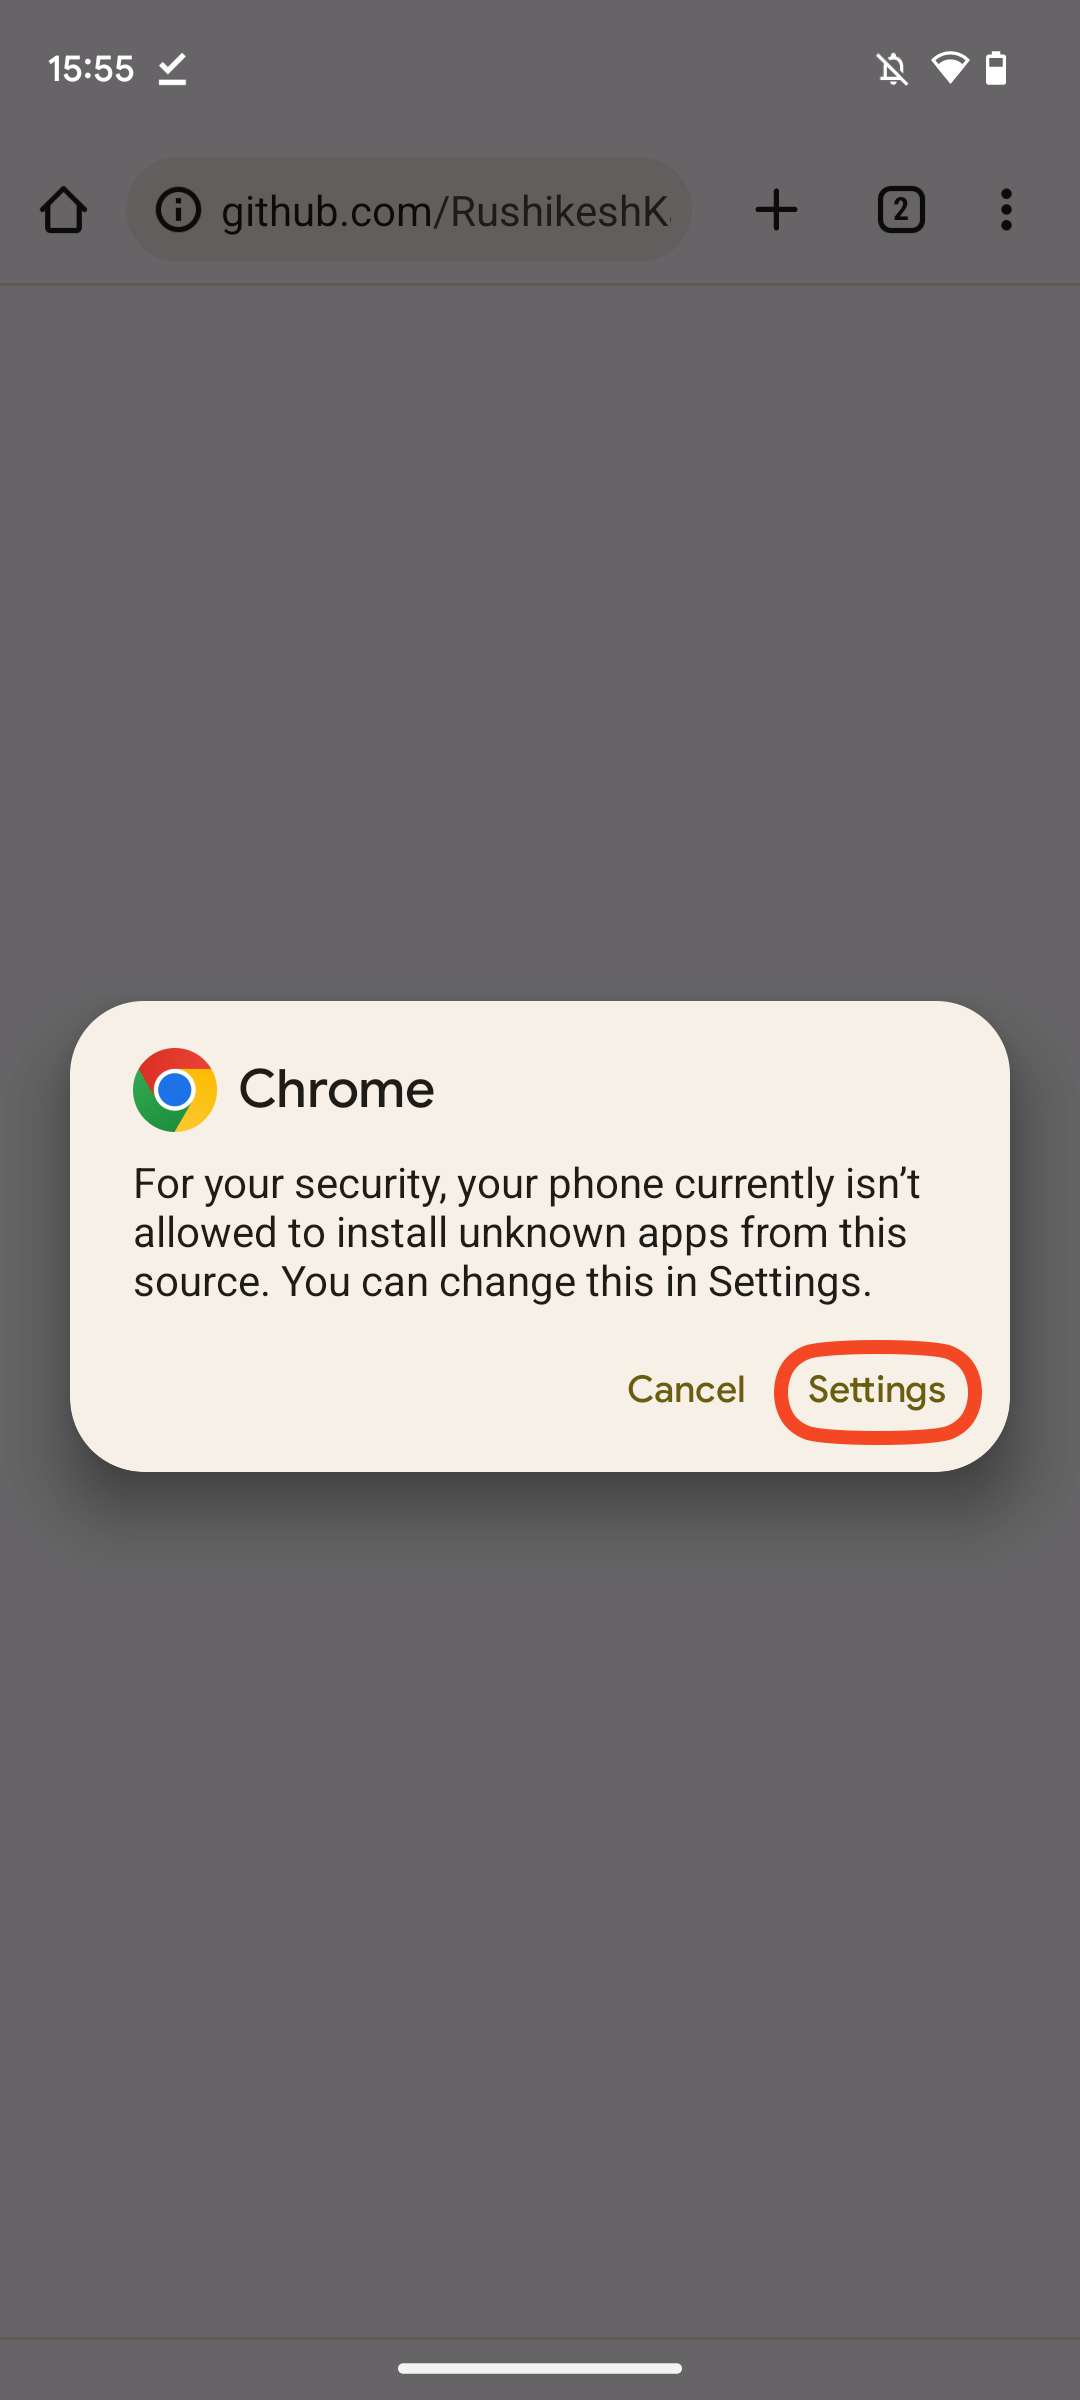 Captura de tela do pop-up do Chrome solicitando que você vá para Configurações para permitir a instalação de aplicativos desconhecidos